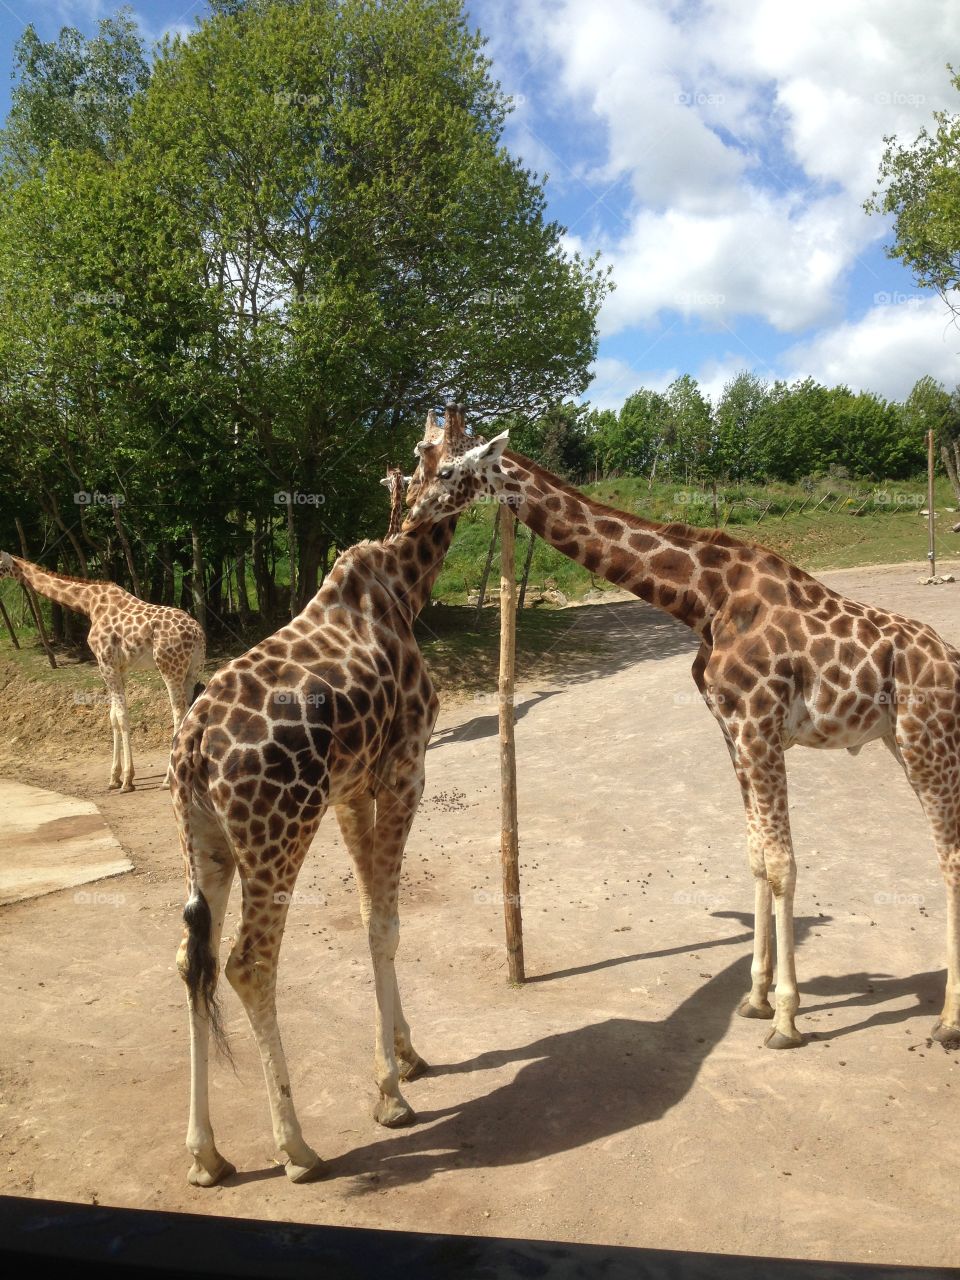 Giraffes. Giraffes grooming each other